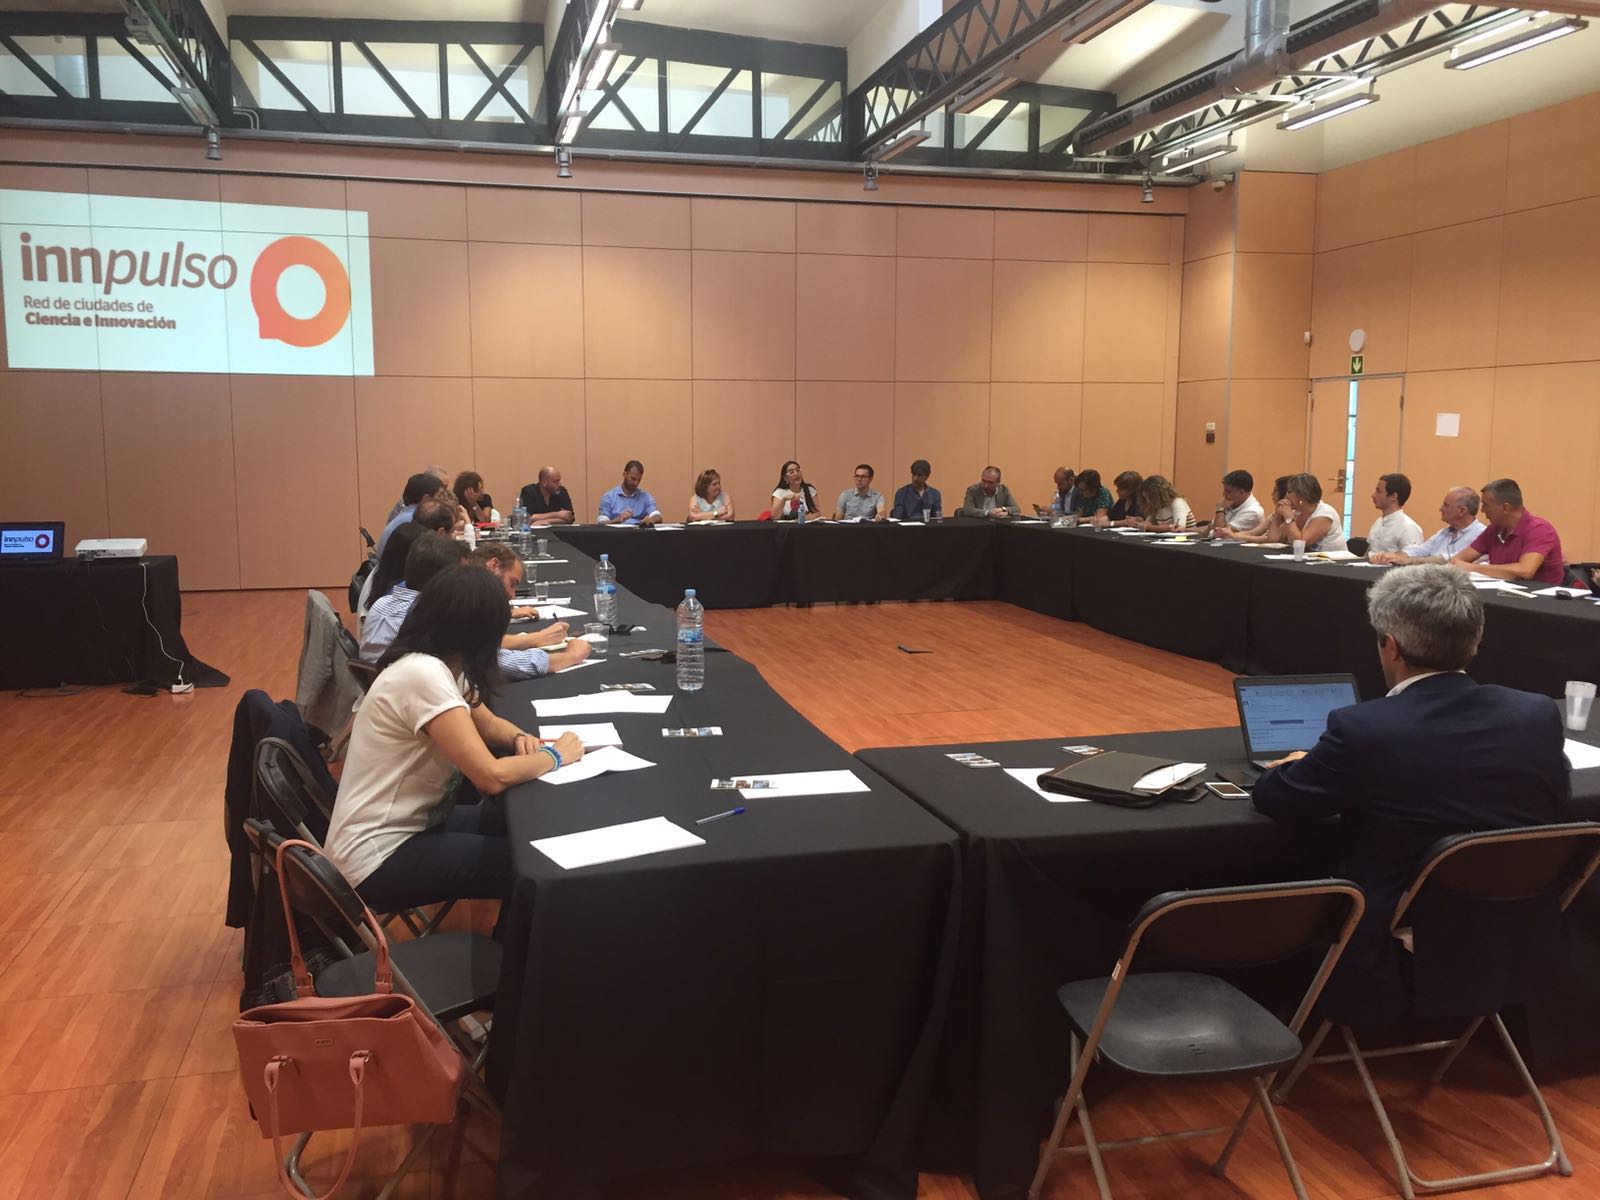 43 ajuntaments participen  a Sabadell a la trobada de la Xarxa Innpulso